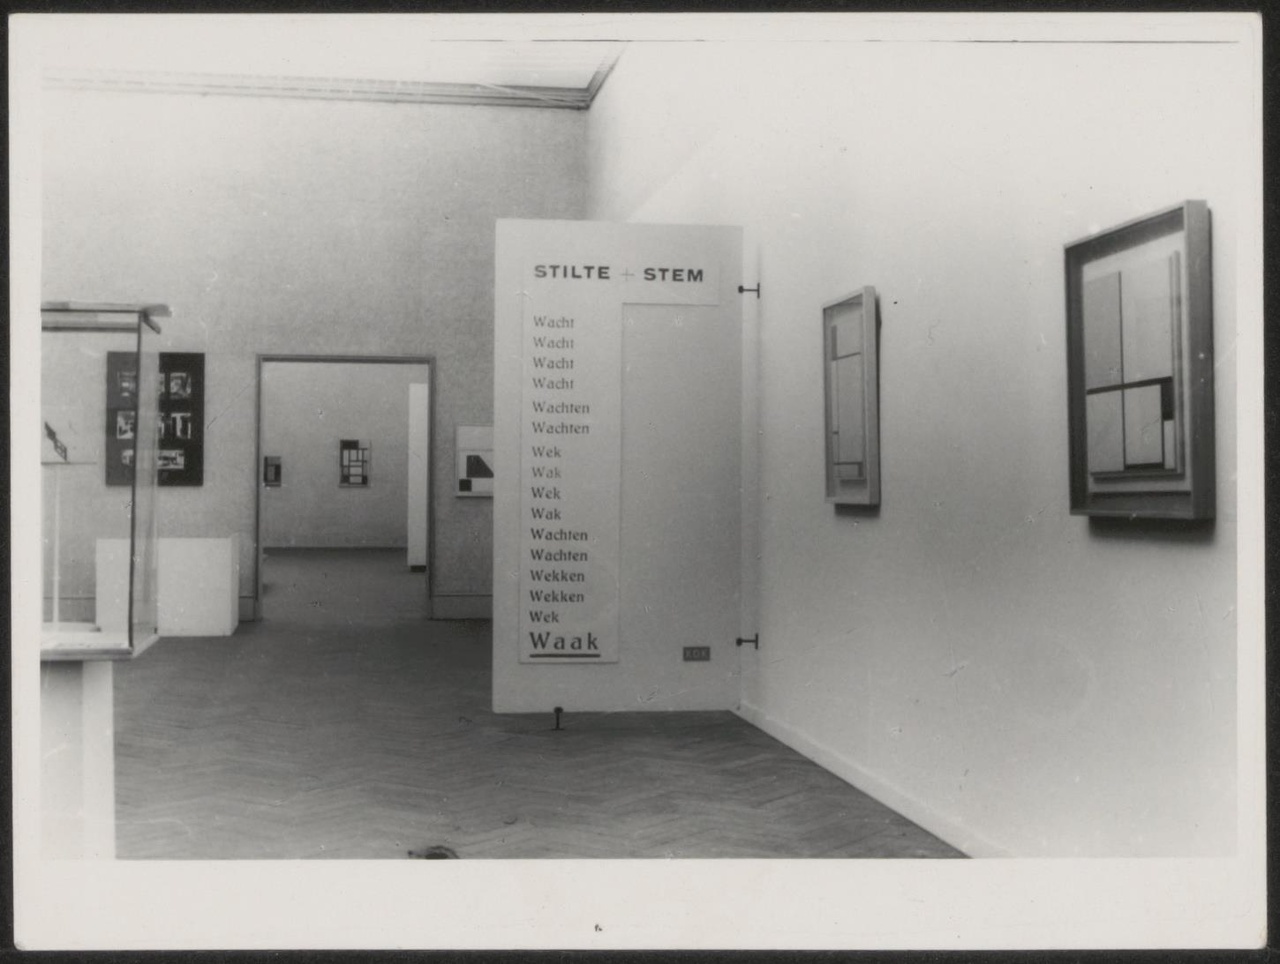 Afbeelding van tentoonstelling De Stijl SMA, 1951, zaal 4, schot met dada-tekst Stilte-Stem